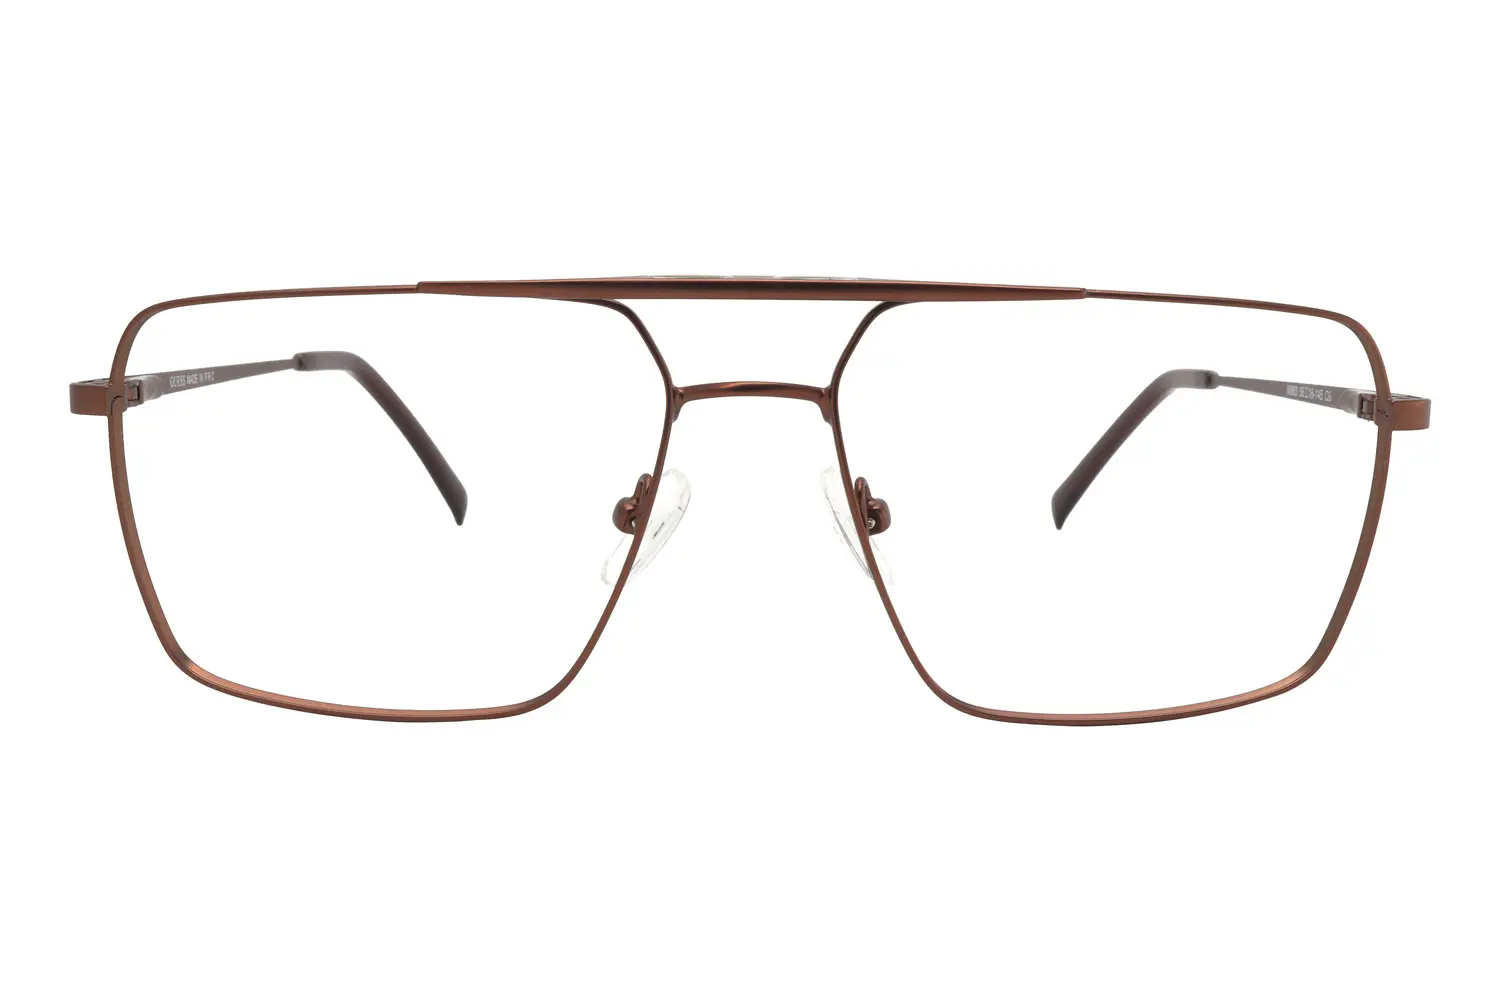 عینک طبی GUCCI مدل M883 C6 - دکترعینک